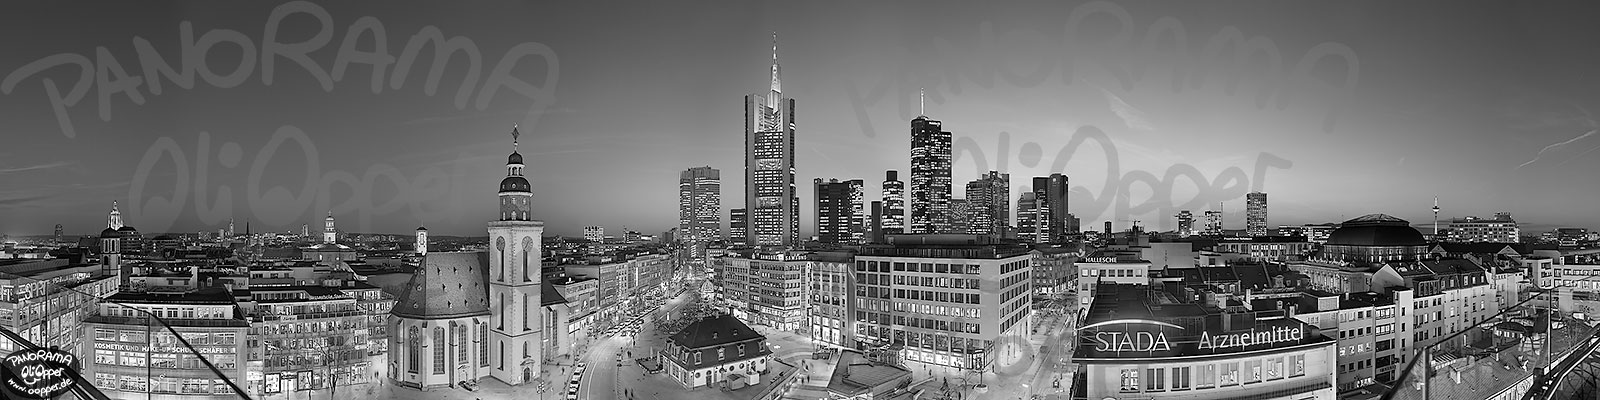 Frankfurt - Skyline von der Zeilgalerie - p8262 - (c) by Oliver Opper